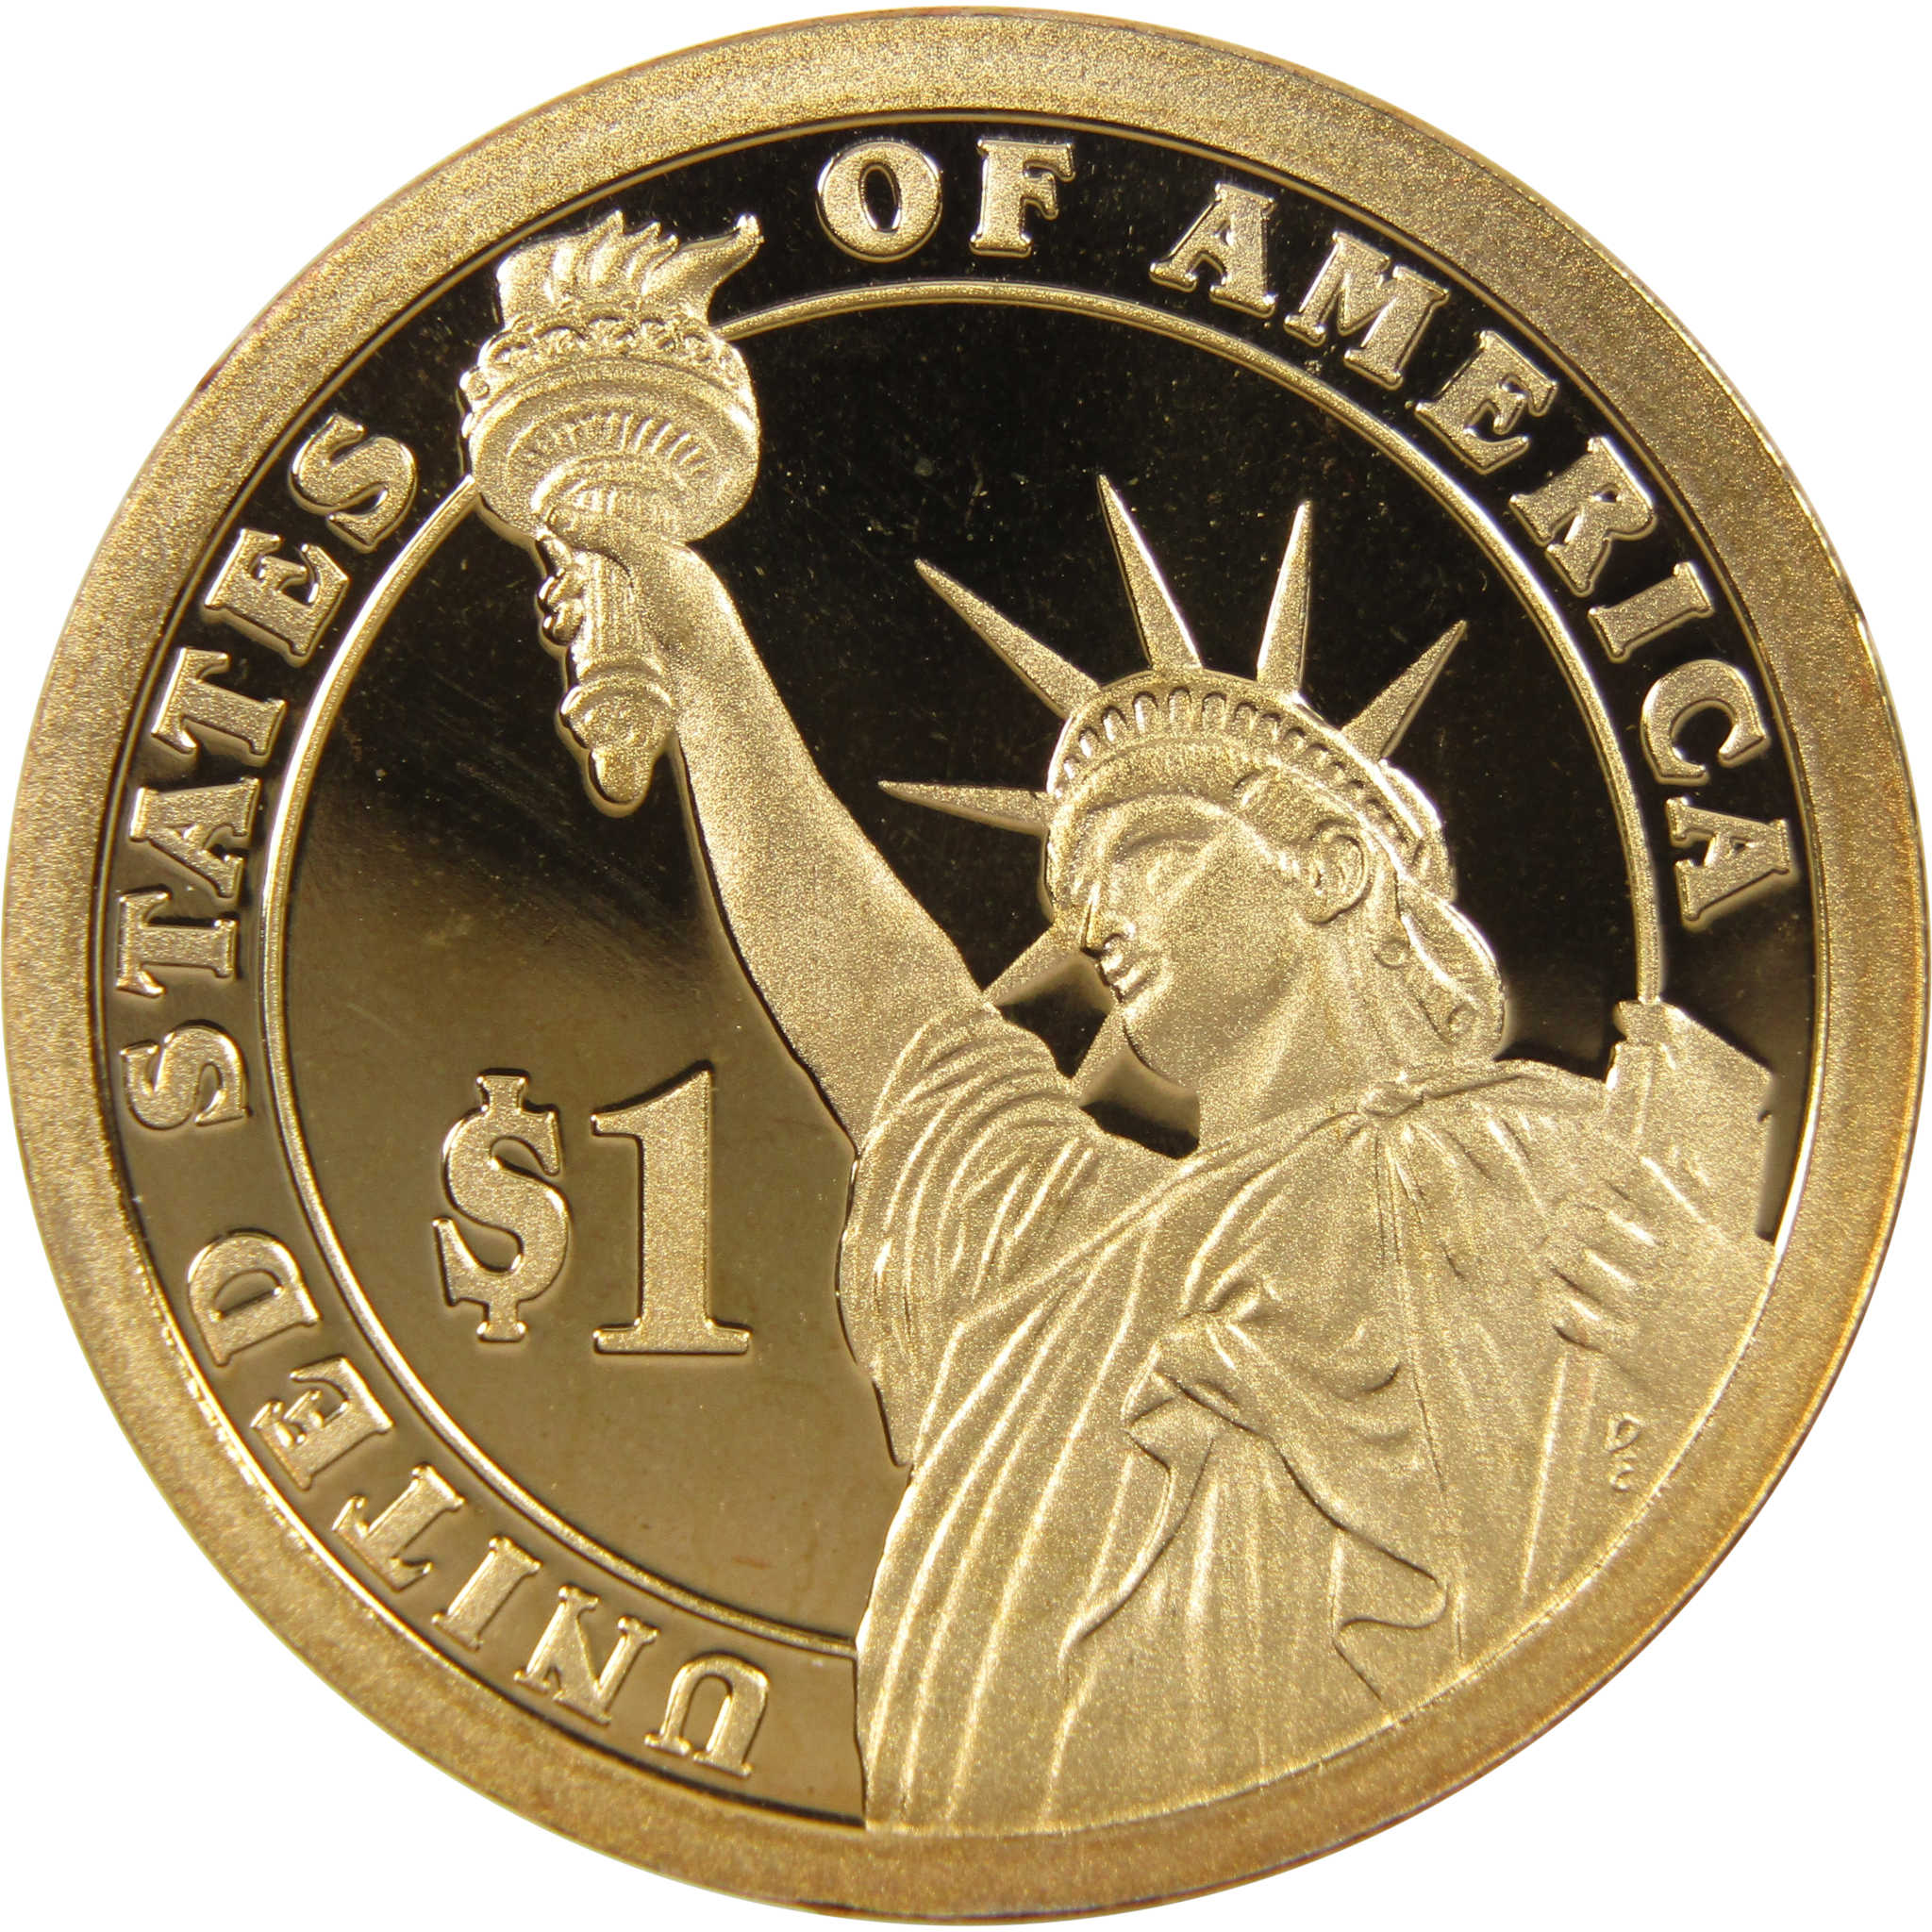 2009 S John Tyler Presidential Dollar Choice Proof $1 Coin